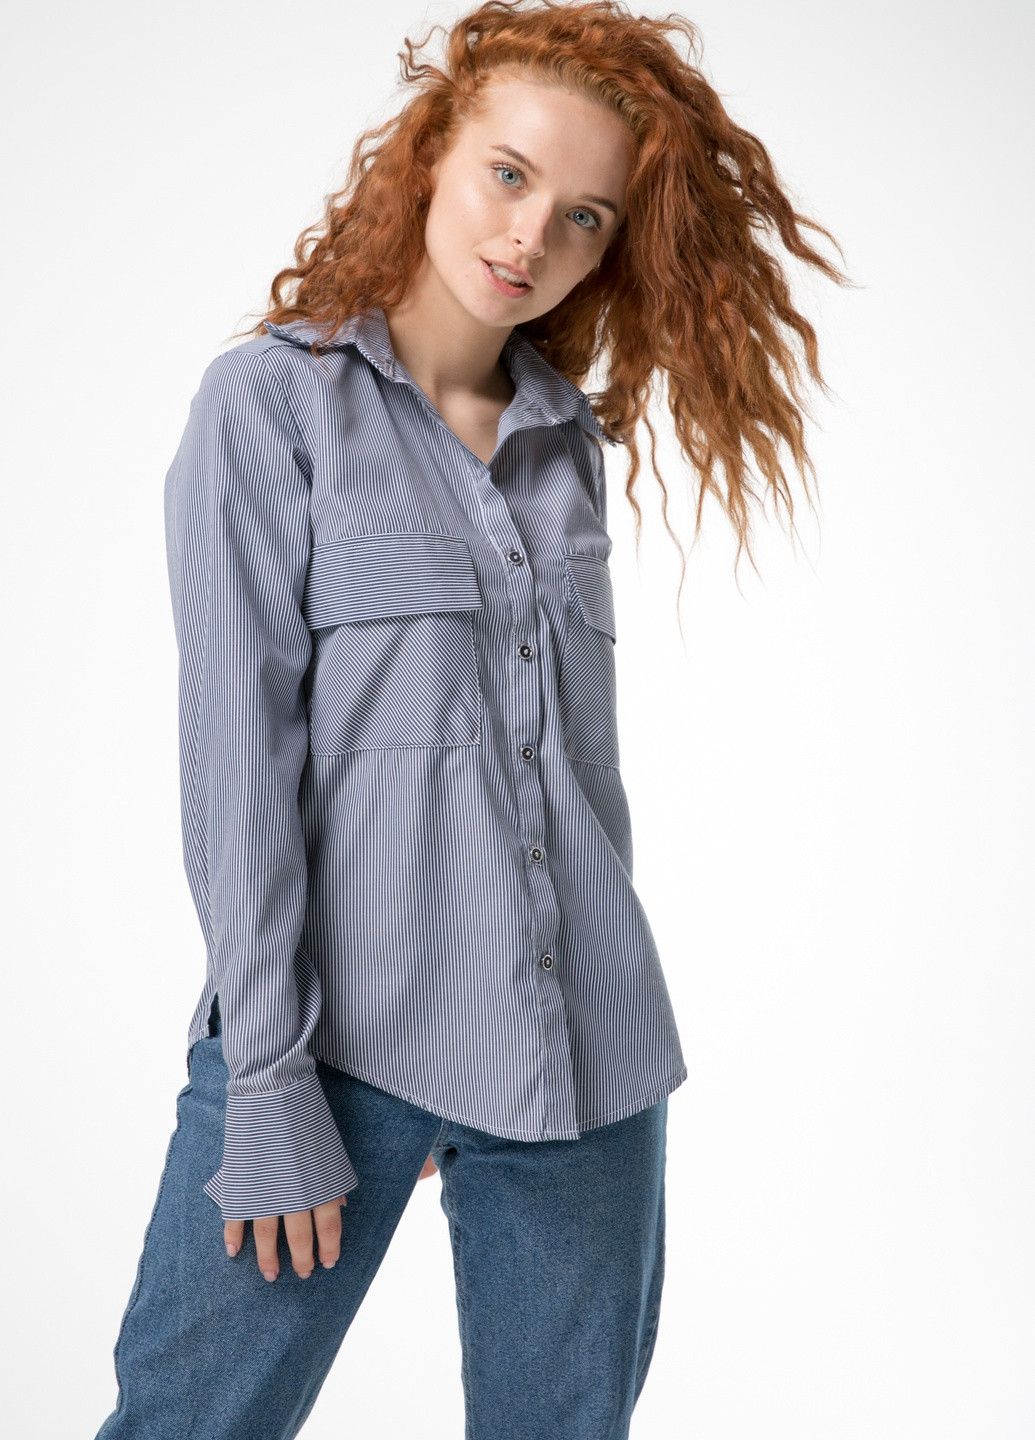 Синяя классическая женская рубашка в мелкую полосочку INNOE Рубашка